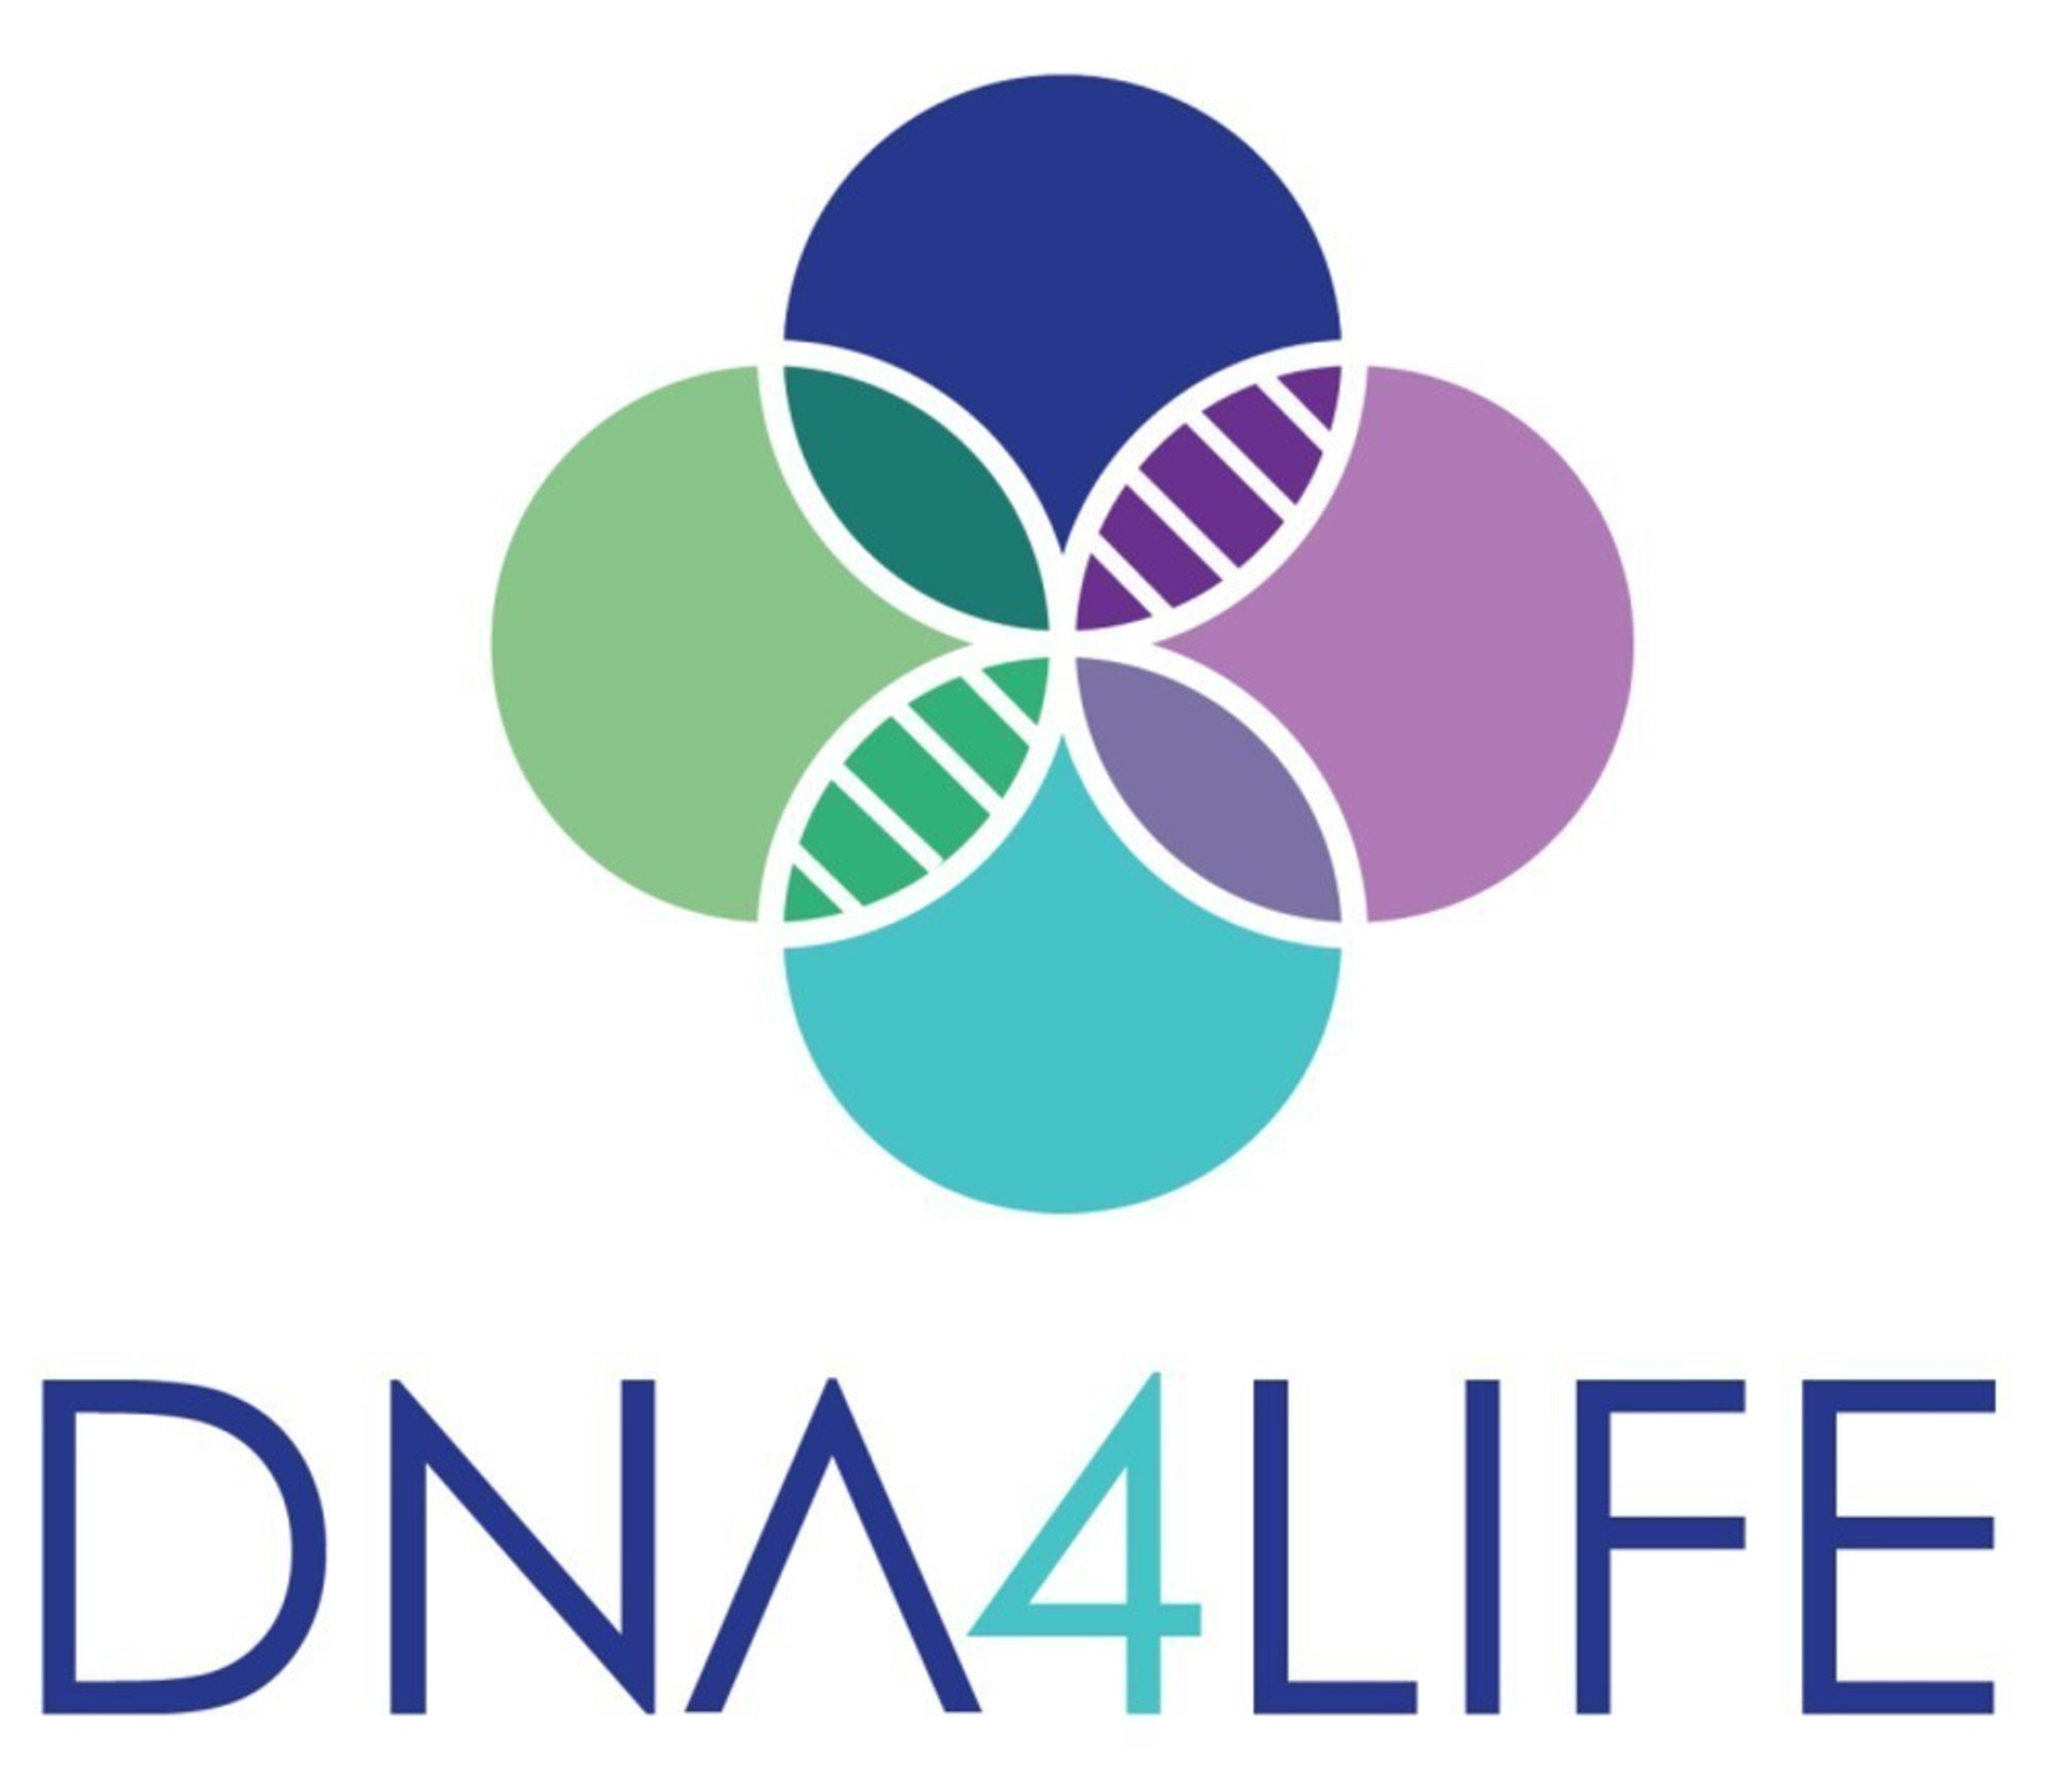 Official DNA4Life logo